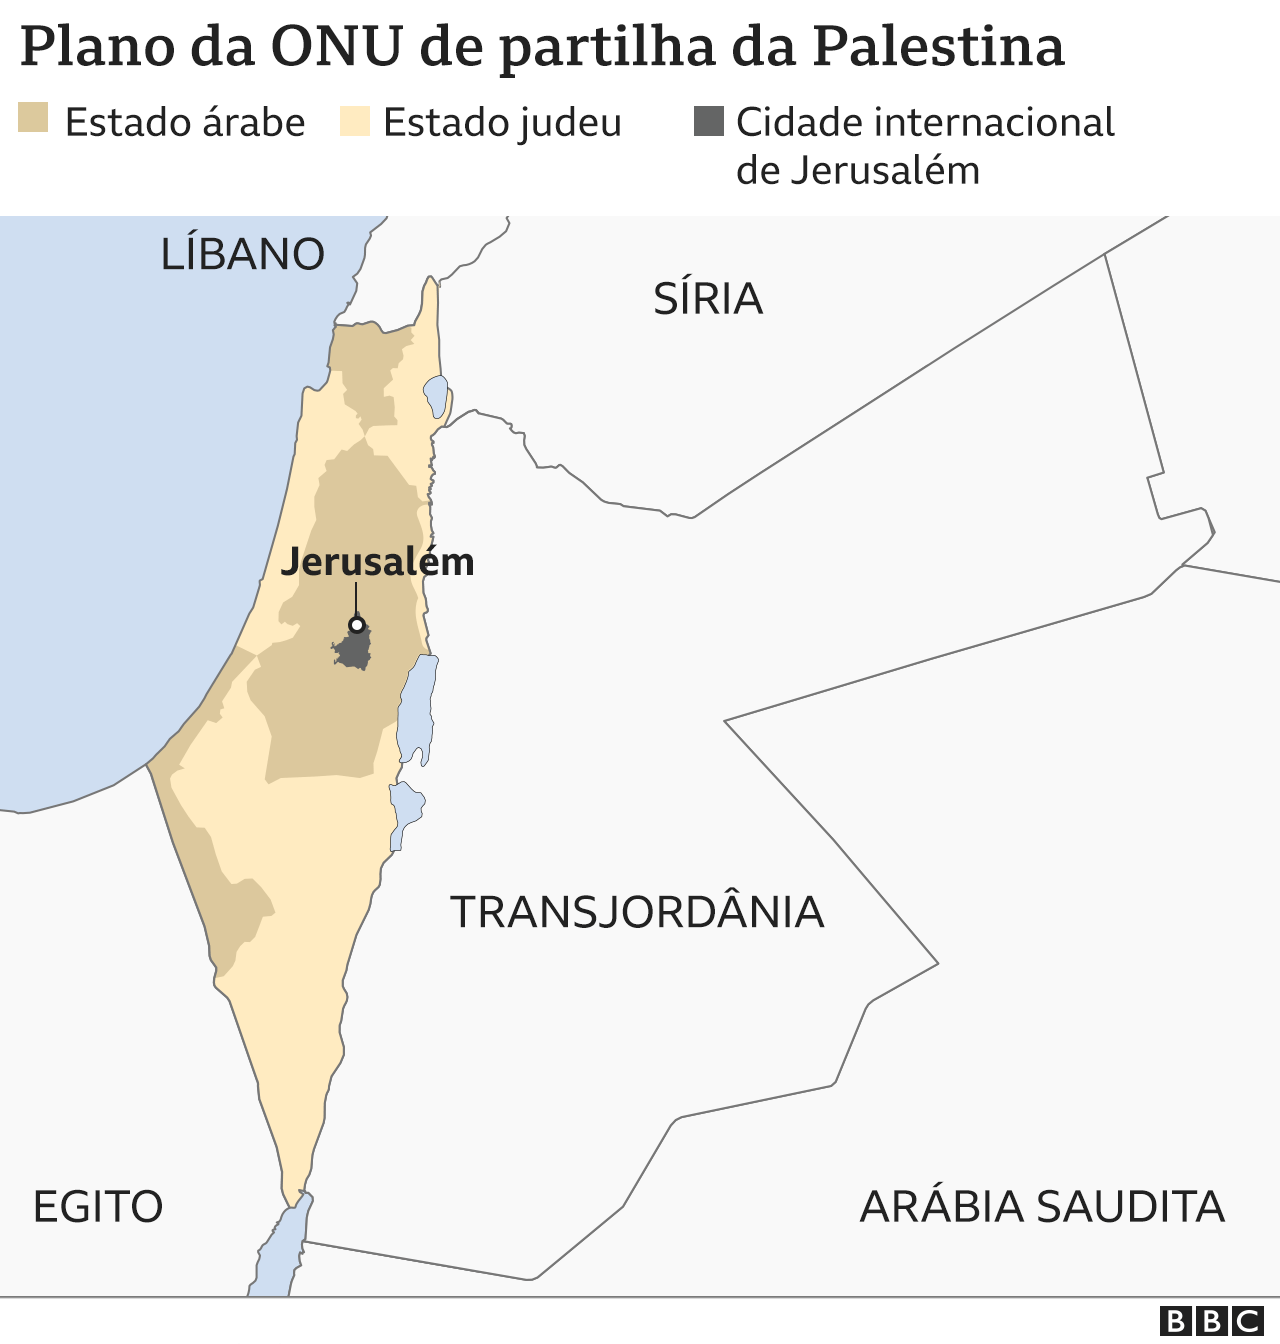 Plano de partilha da ONU para a Palestina depois da Segunda Guerra Mundial